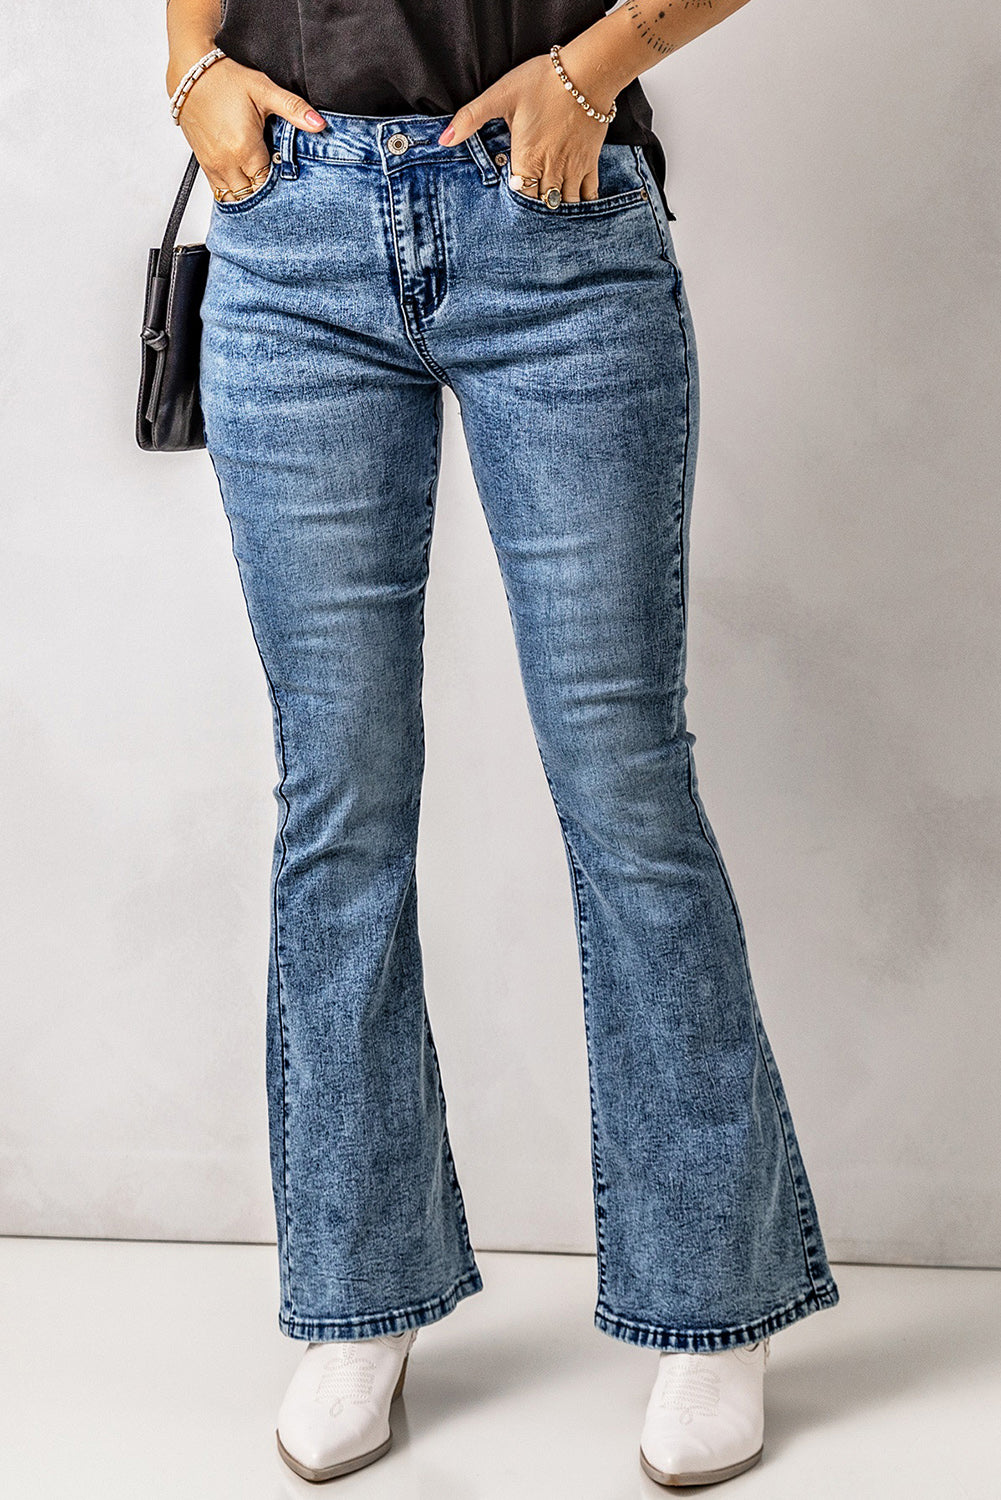 Vintage Wash Flare Jeans with Pockets - DromedarShop.com Online Boutique